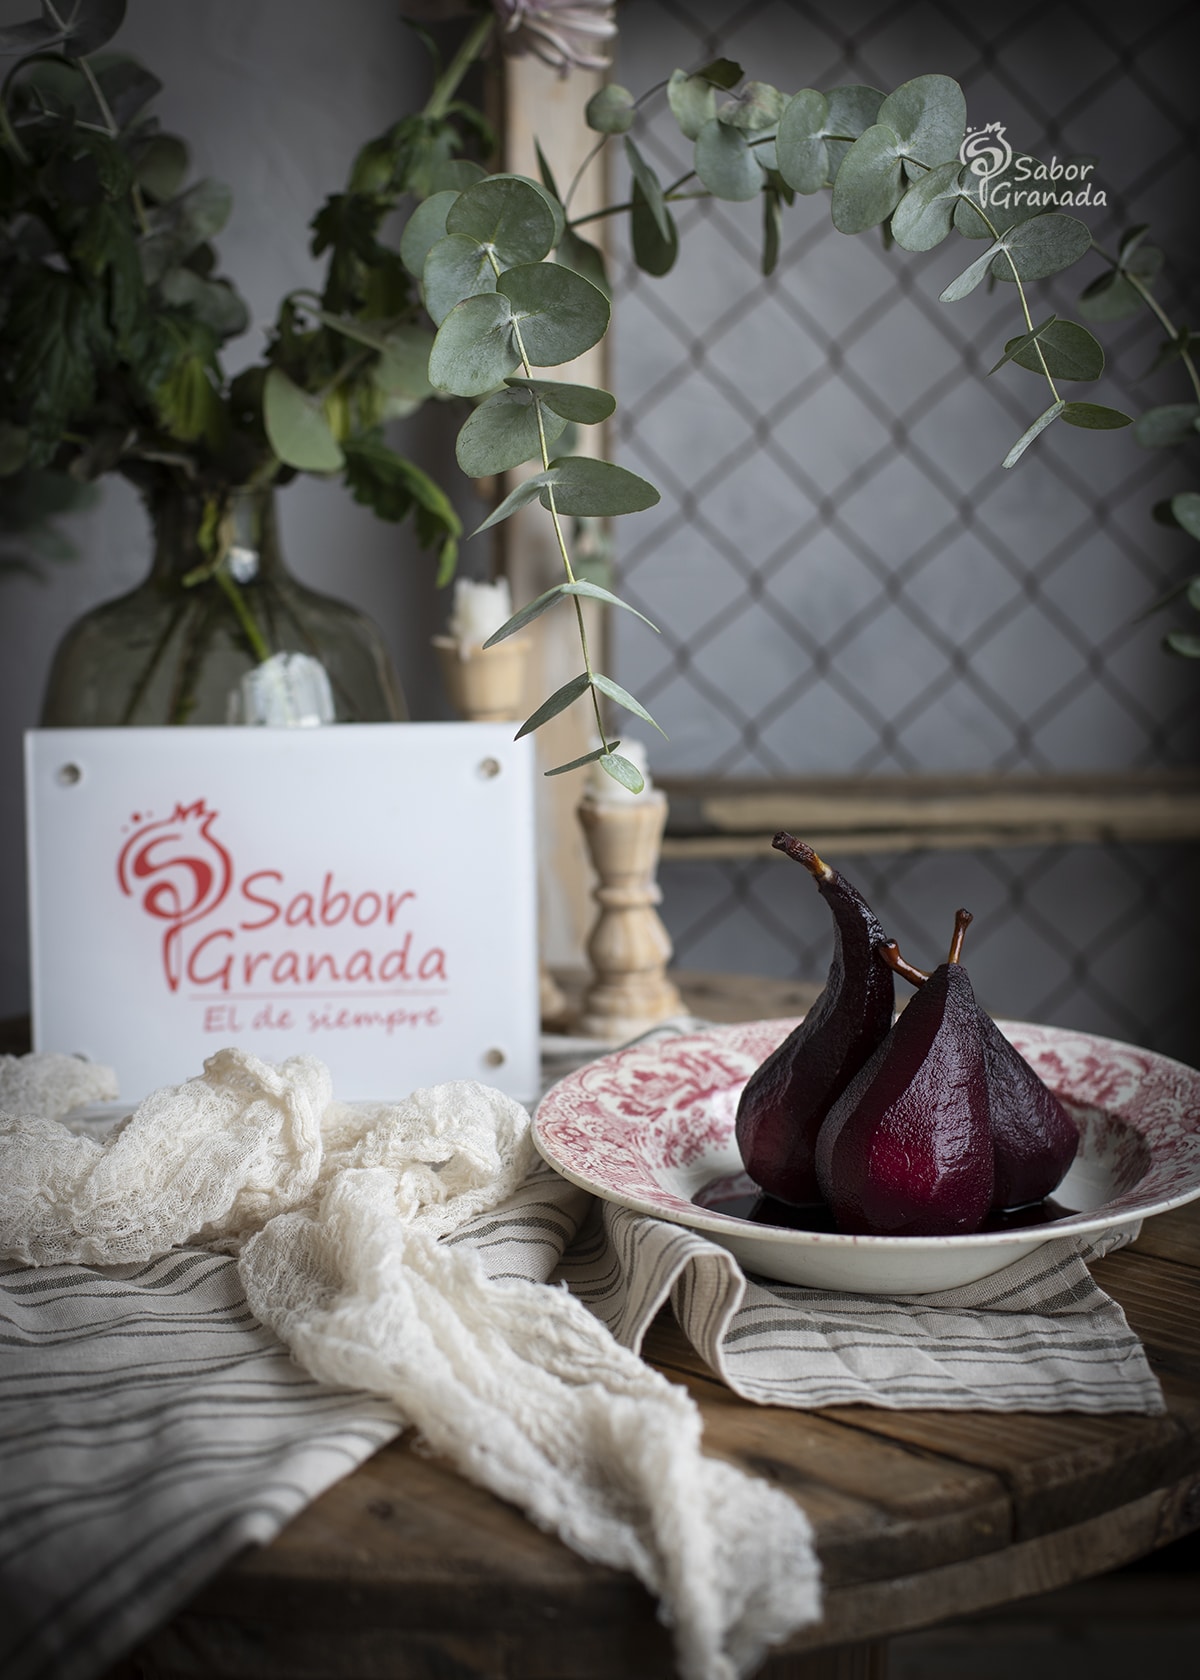 Plato de peras al vino tinto - Sabor Granada